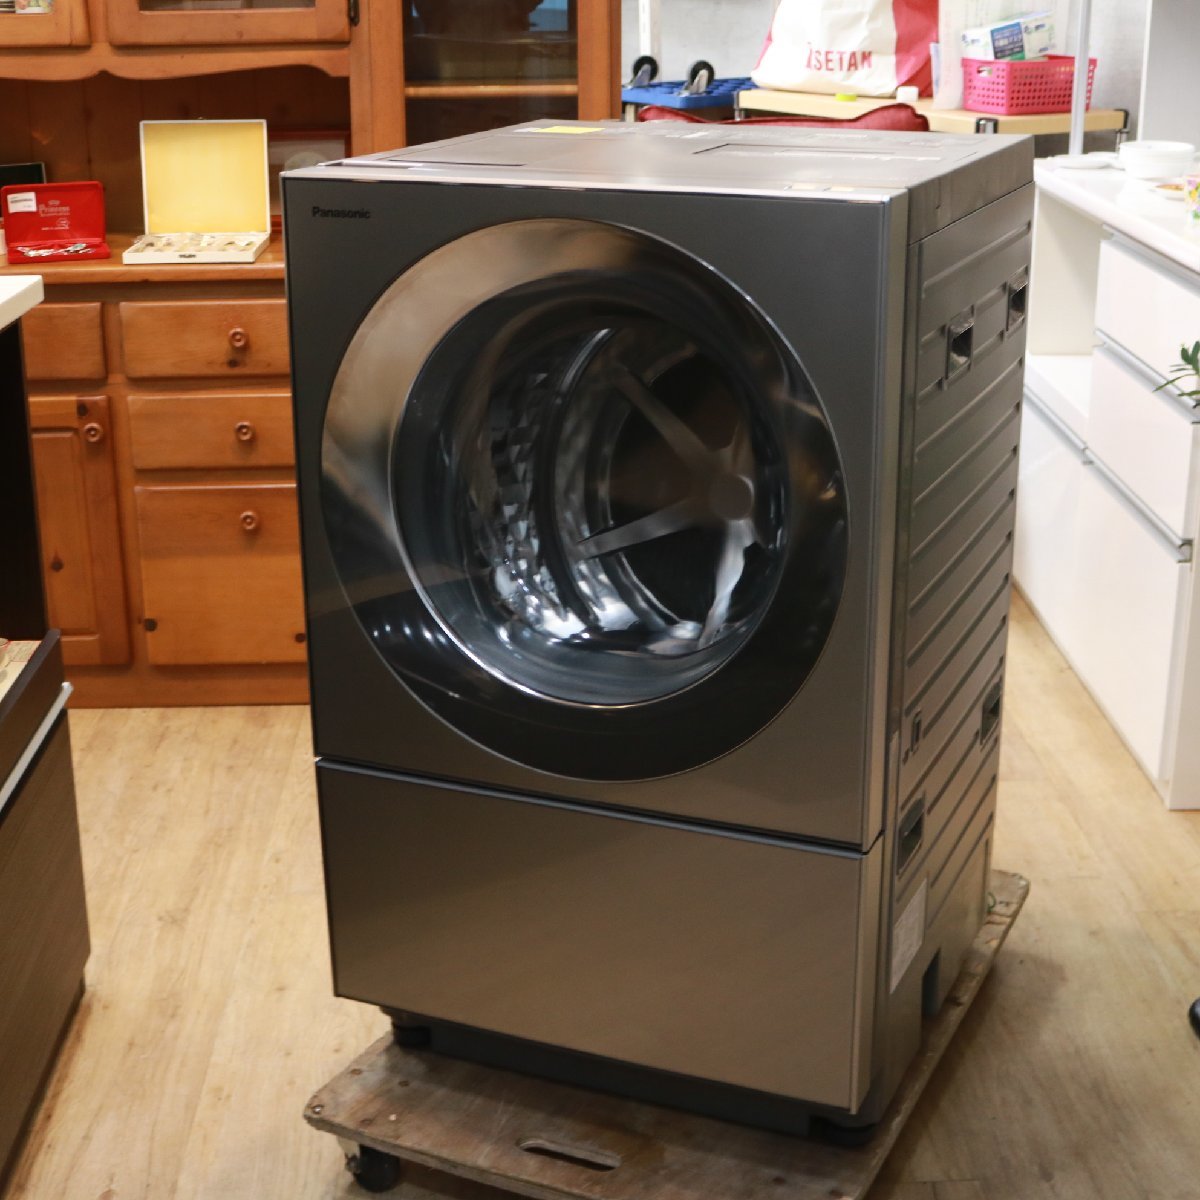 横浜市緑区にて パナソニック ななめドラム式洗濯乾燥機 NA-VG2300R Cuble 2019年製 を出張買取させて頂きました。